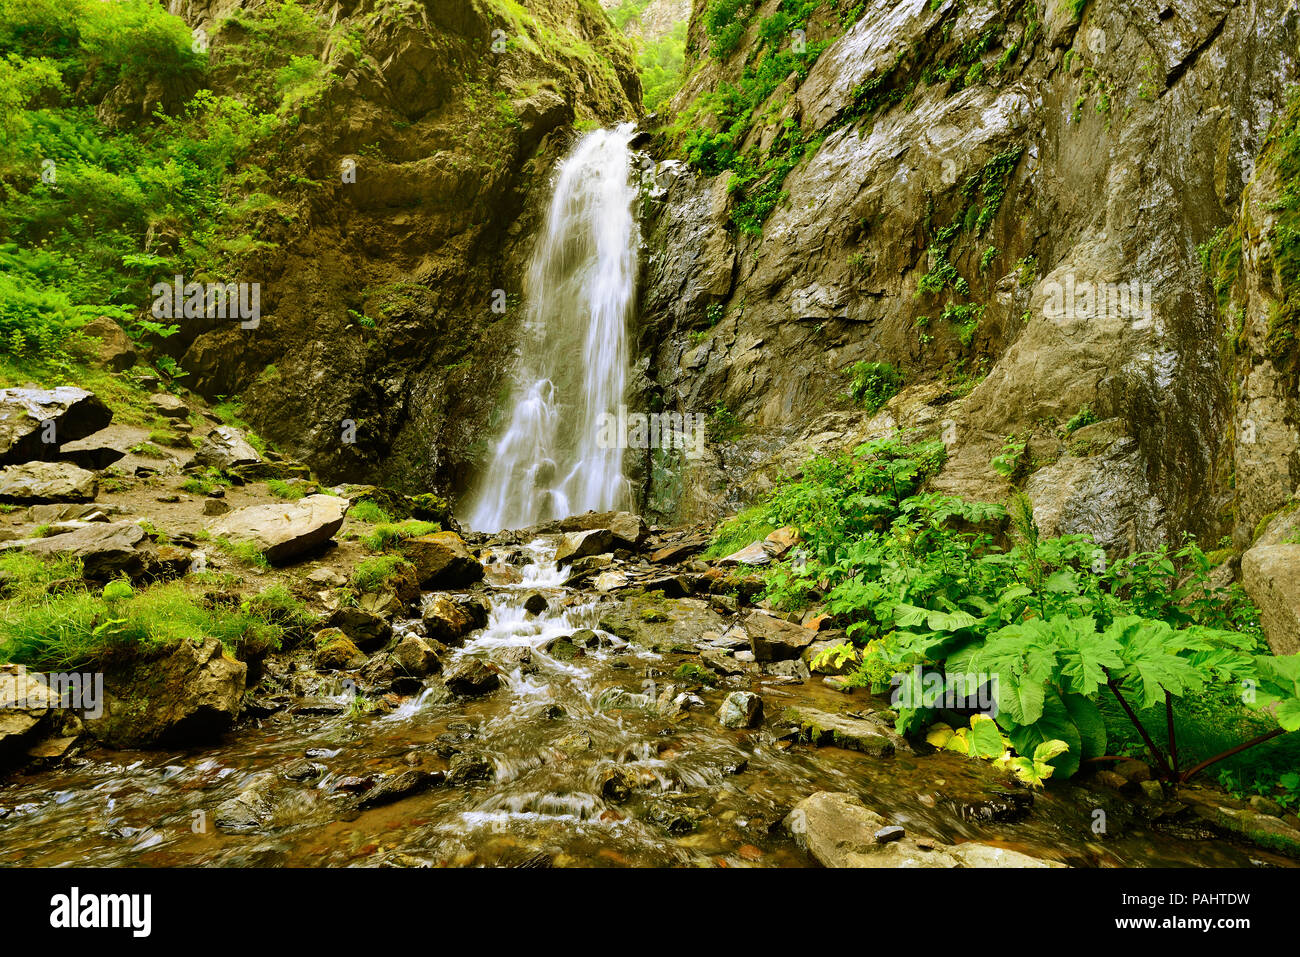 Gveleti petites chutes d'être dans une gorge Dariali près de la ville de Kazbegi dans les montagnes du Caucase, Geprgia Banque D'Images